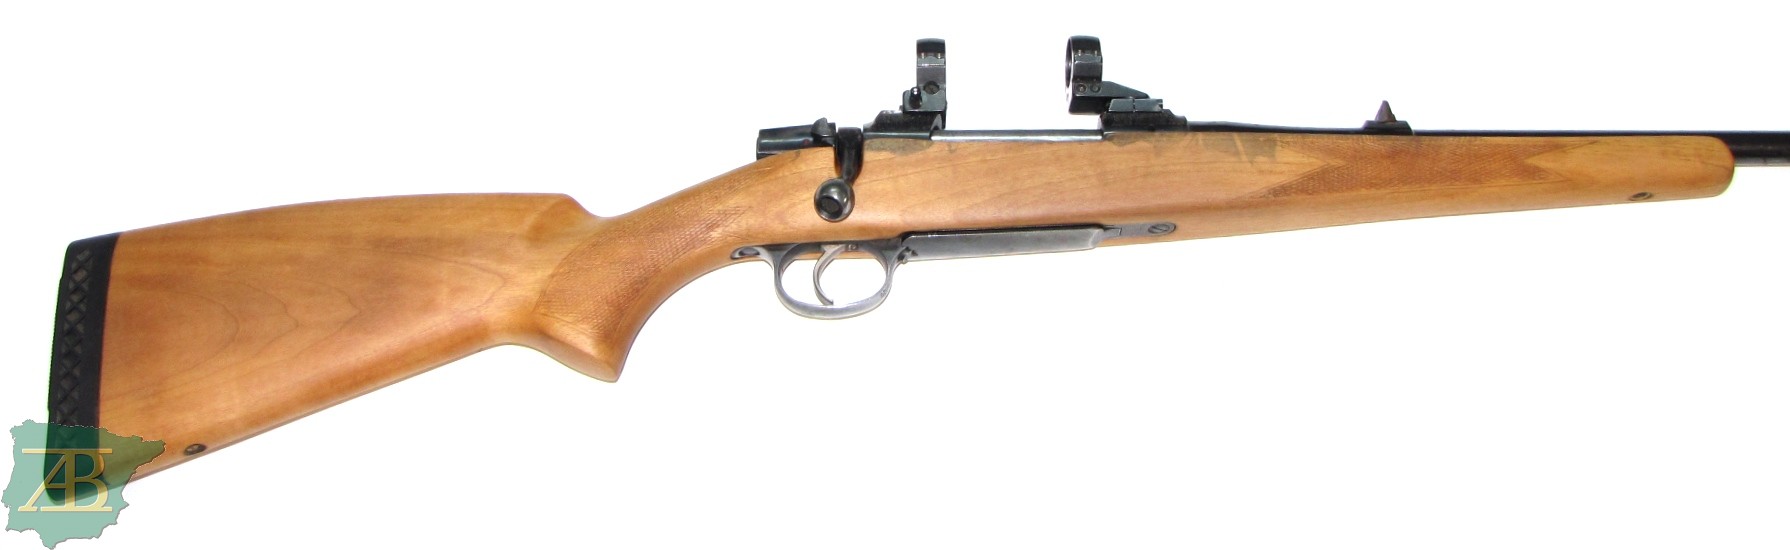 Rifle de cerrojo de caza BRNO 537 Ref 7111-armeriaiberica-2